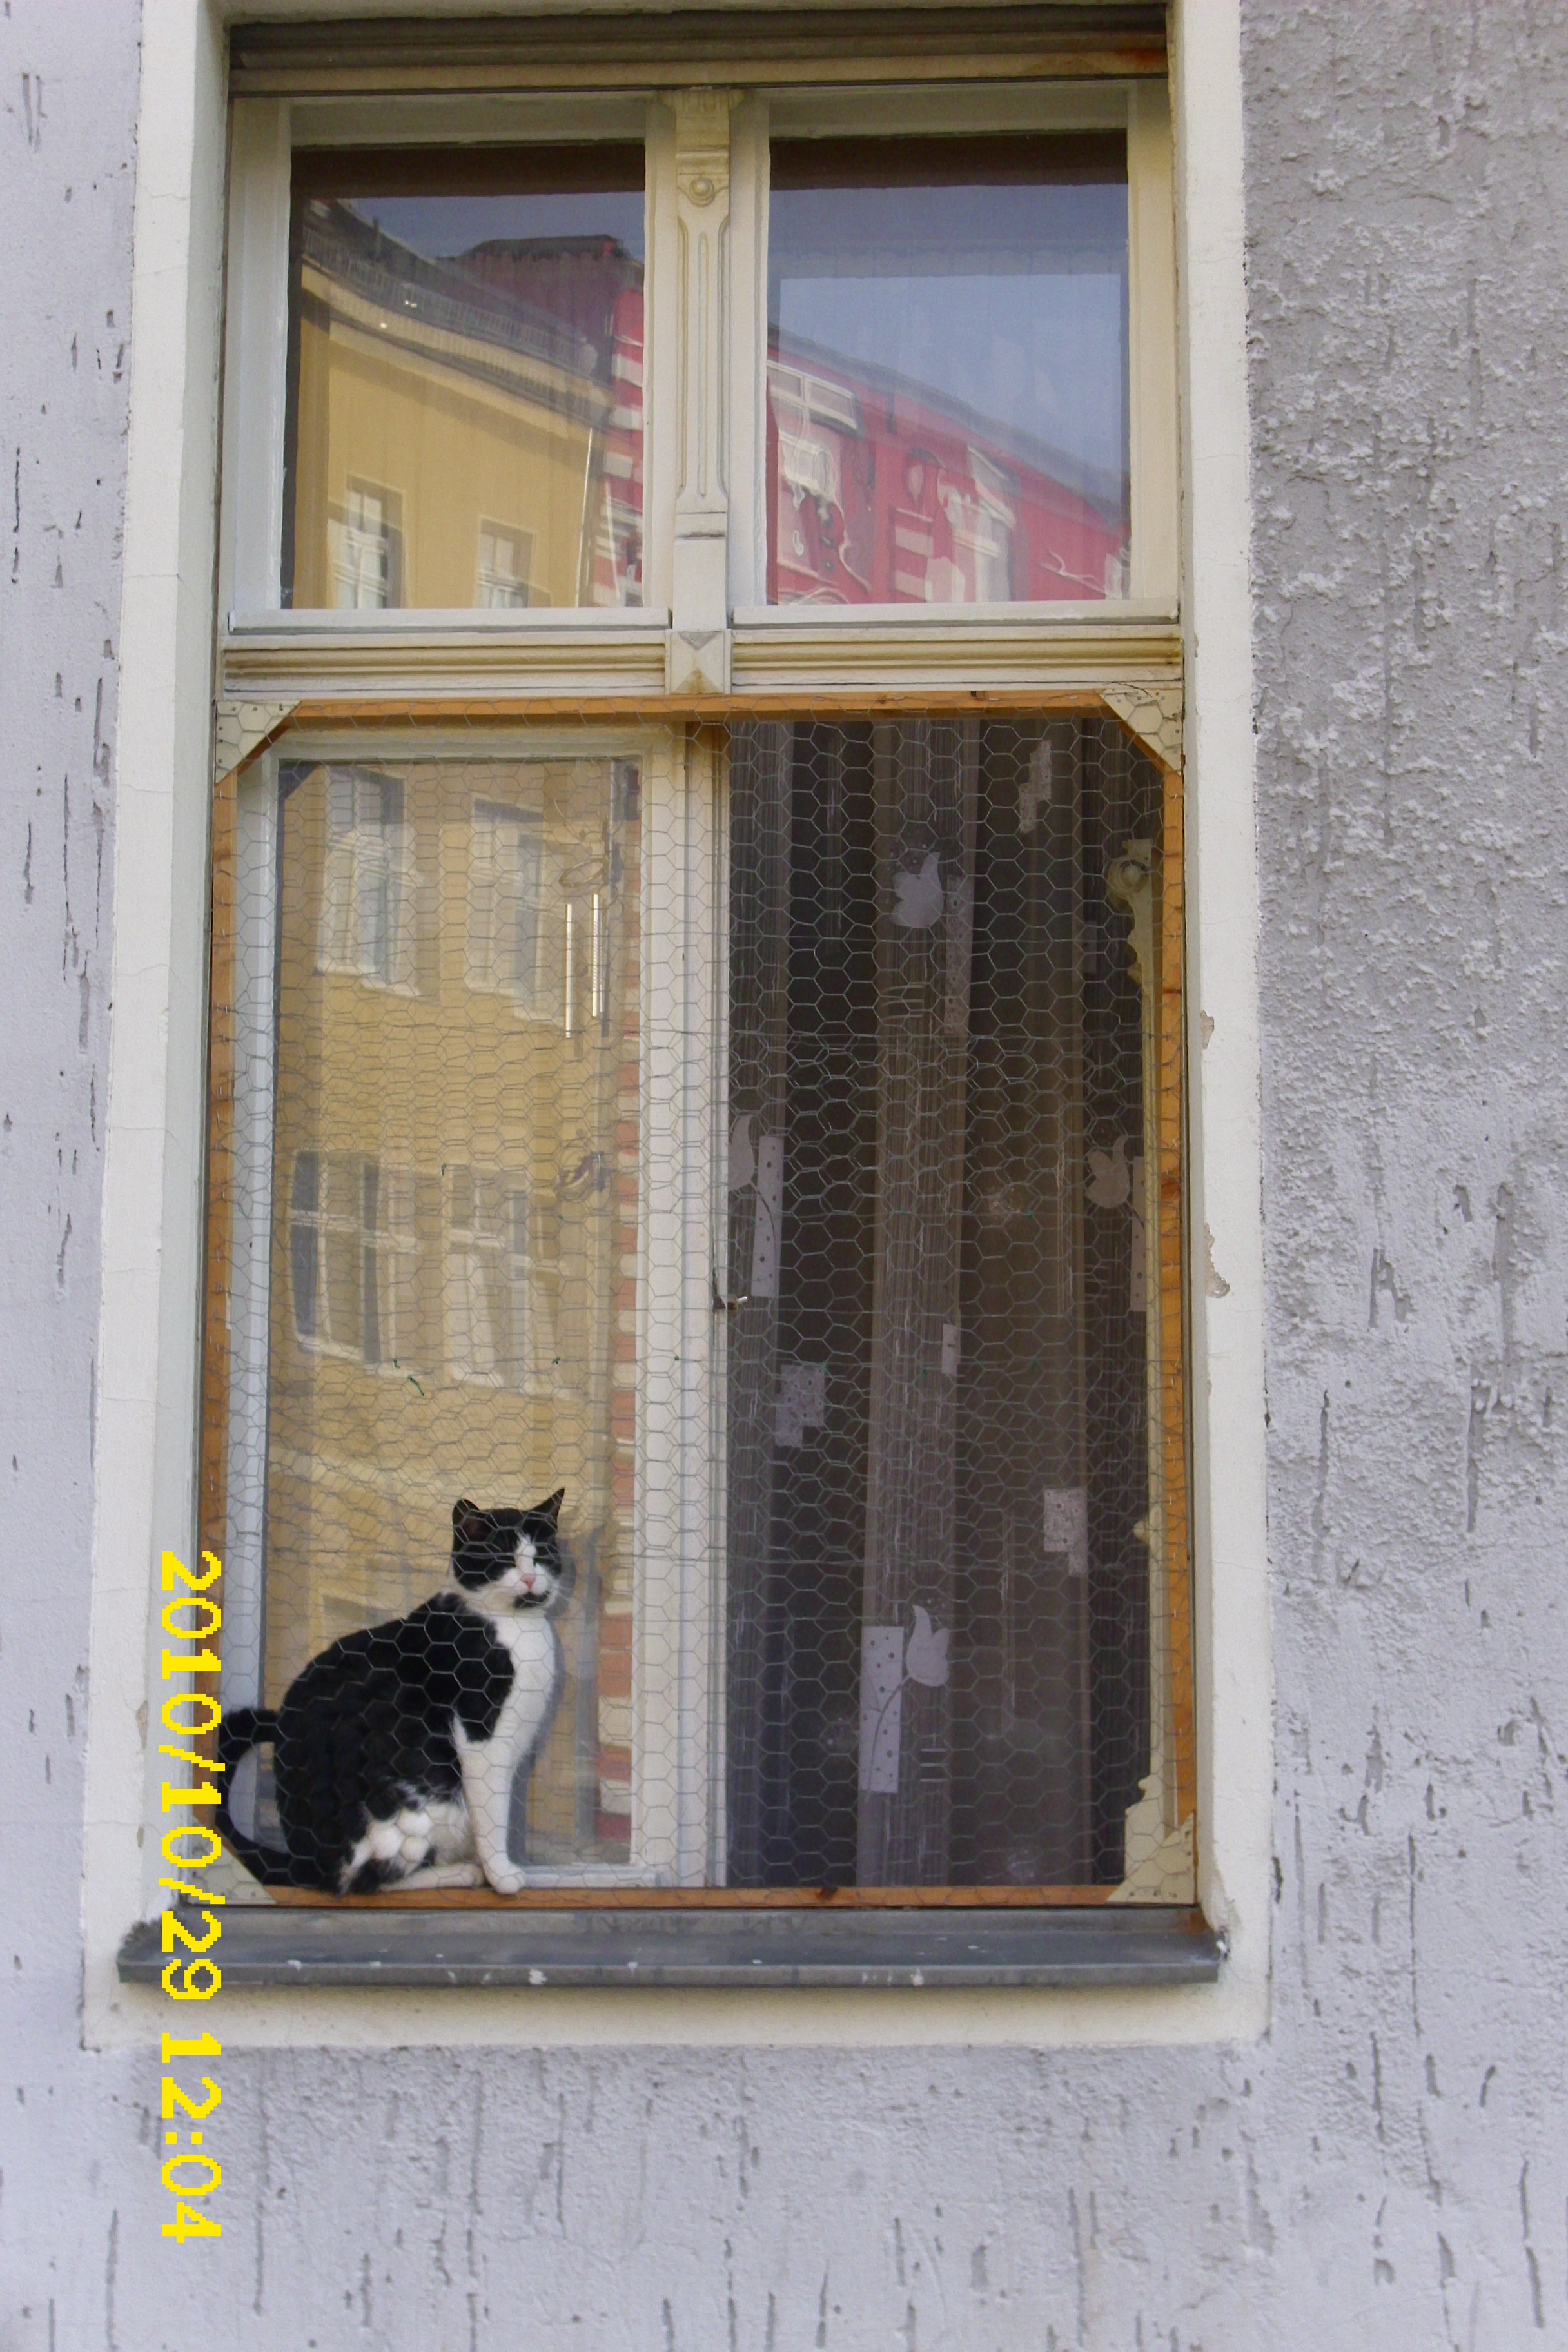 Farbfoto: Die Katze guckt durch ein Fenster in die Bendastraße. Im Bezirk Neukölln in Berlin im Oktober des Jares 2010. Foto: Erwin Thomasius.